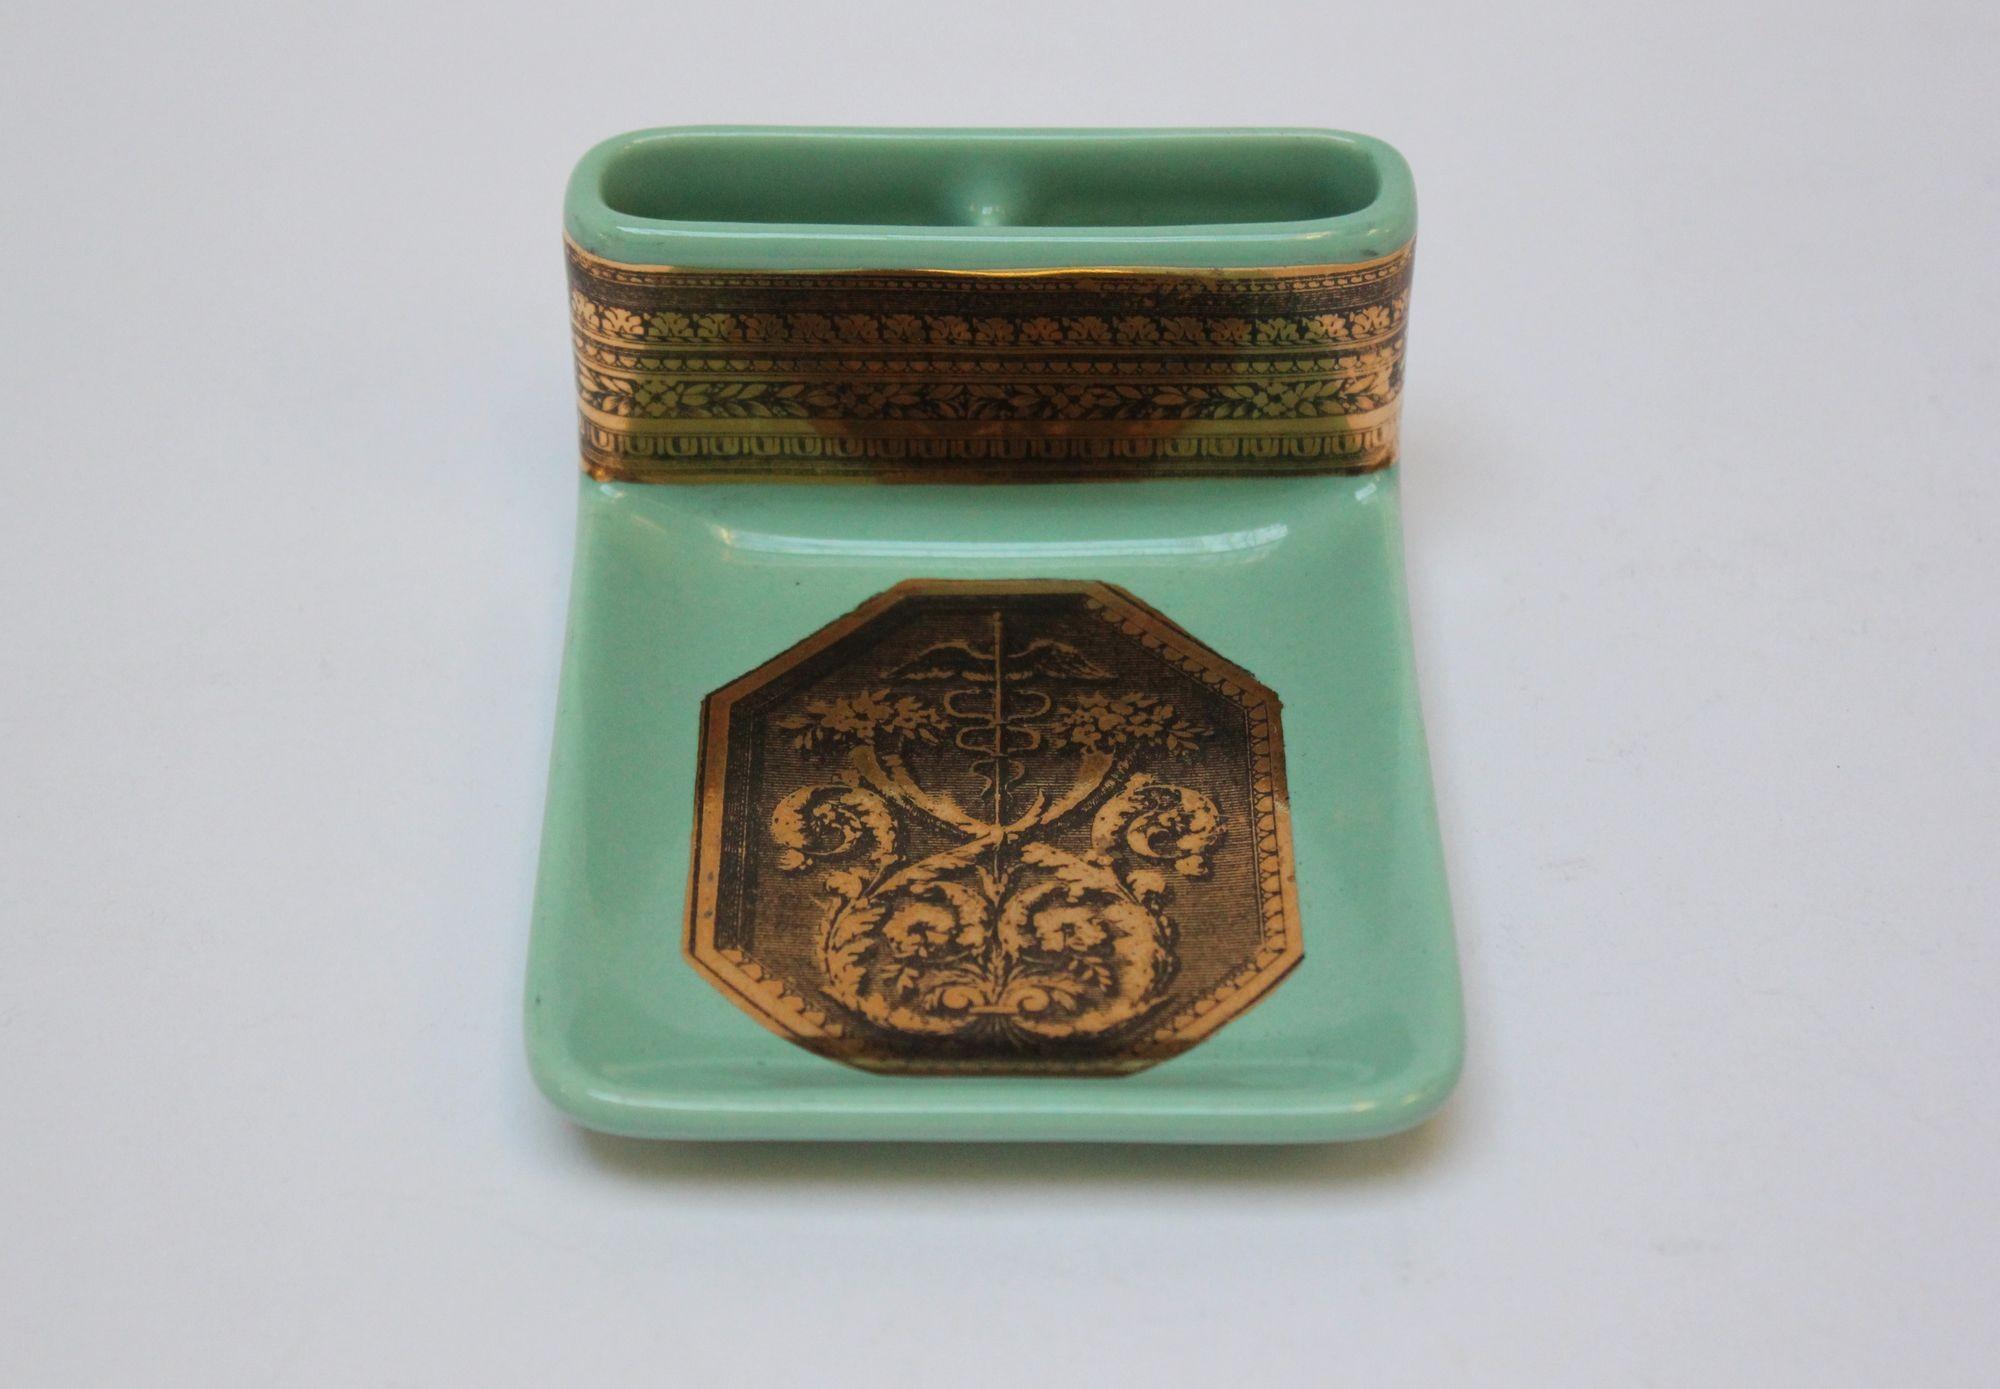 Vintage celadon/mintgrüner Keramik-Aschenbecher/Trinkschale mit Zigarettenschlitzen von Piero Fornasetti, (circa 1950er Jahre, Italien). Mit lithografischer Übertragung und Vergoldung auf Porzellan - das Muster zeigt einen Stab inmitten eines